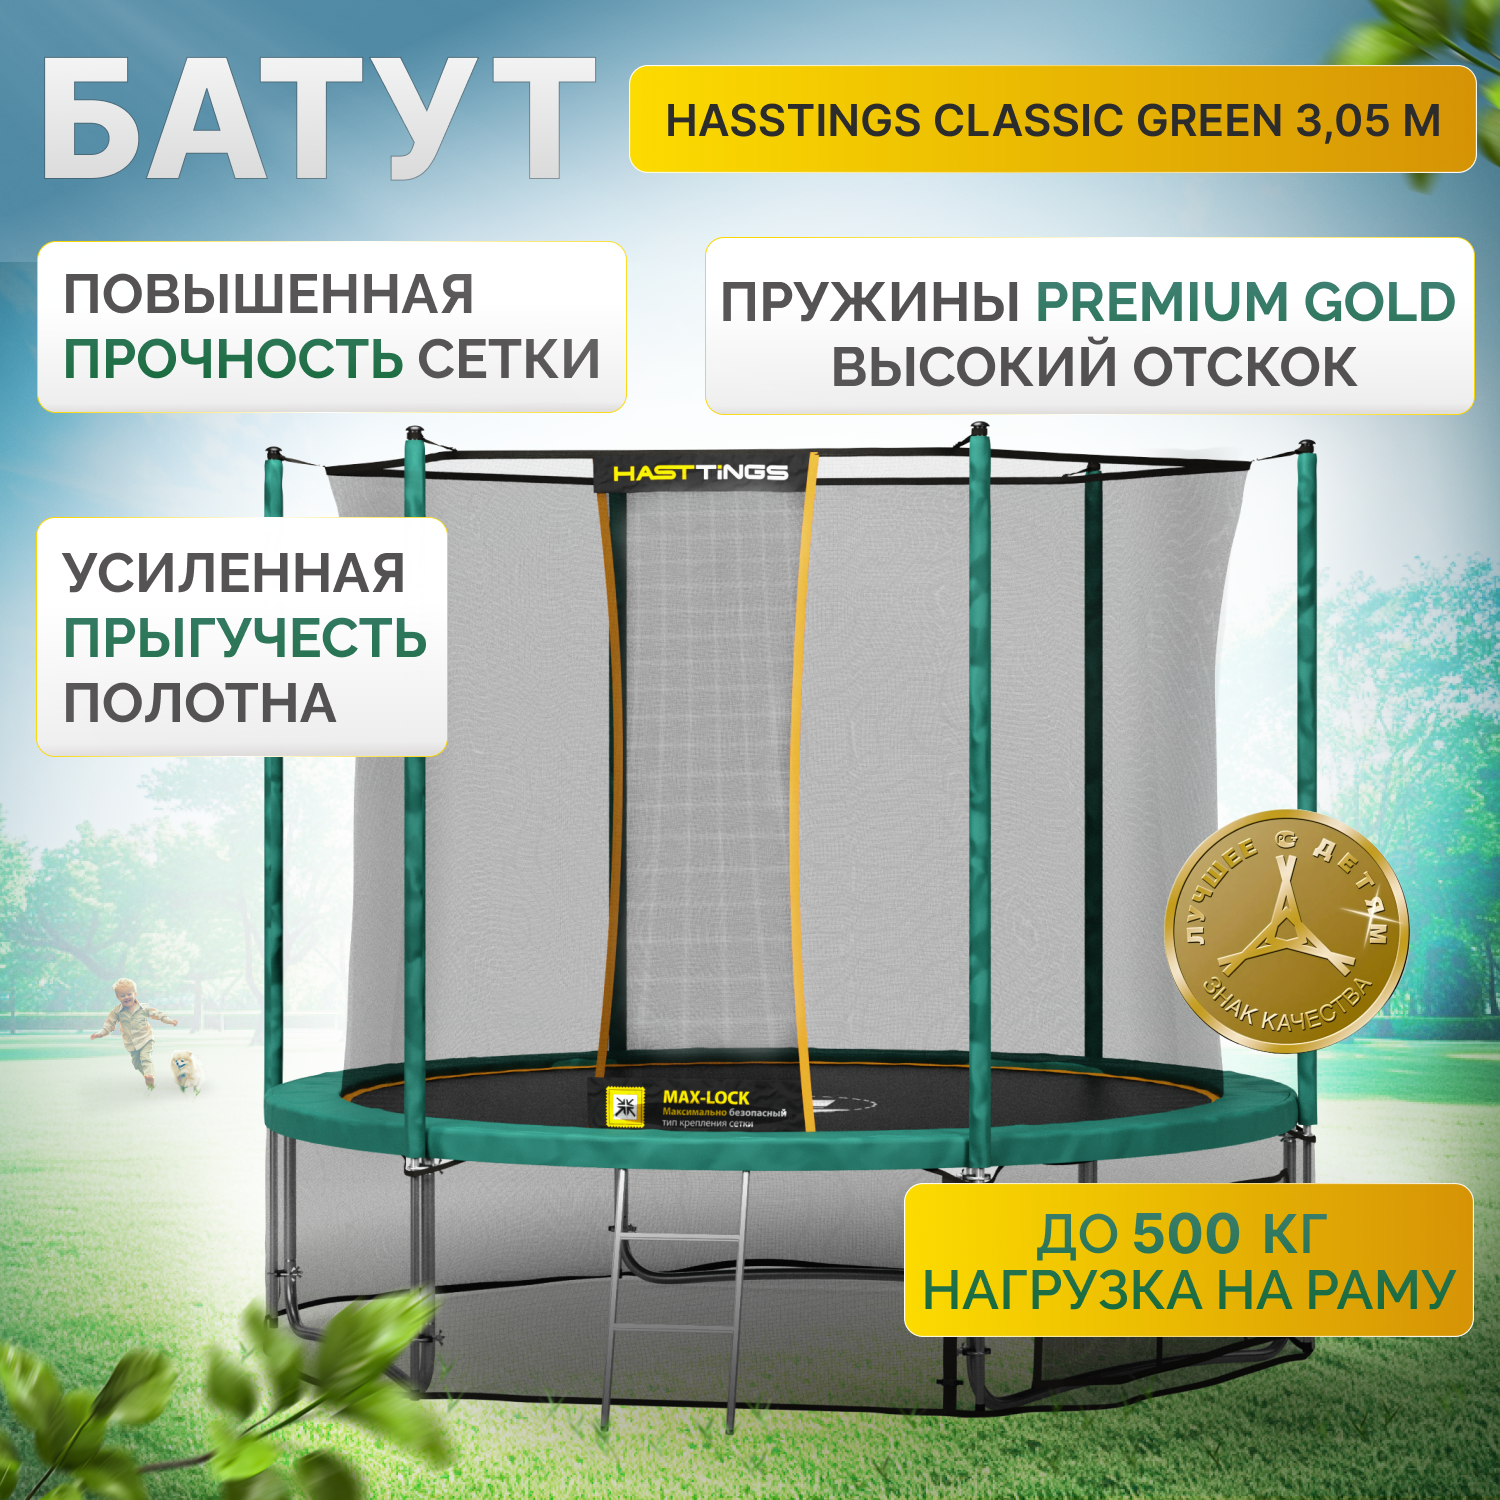 Батут Hasttings Classic Green (3,05 м)- до150 кг/ обновленная модель/защитная внутренняя сетка/каркасный/с лестницей